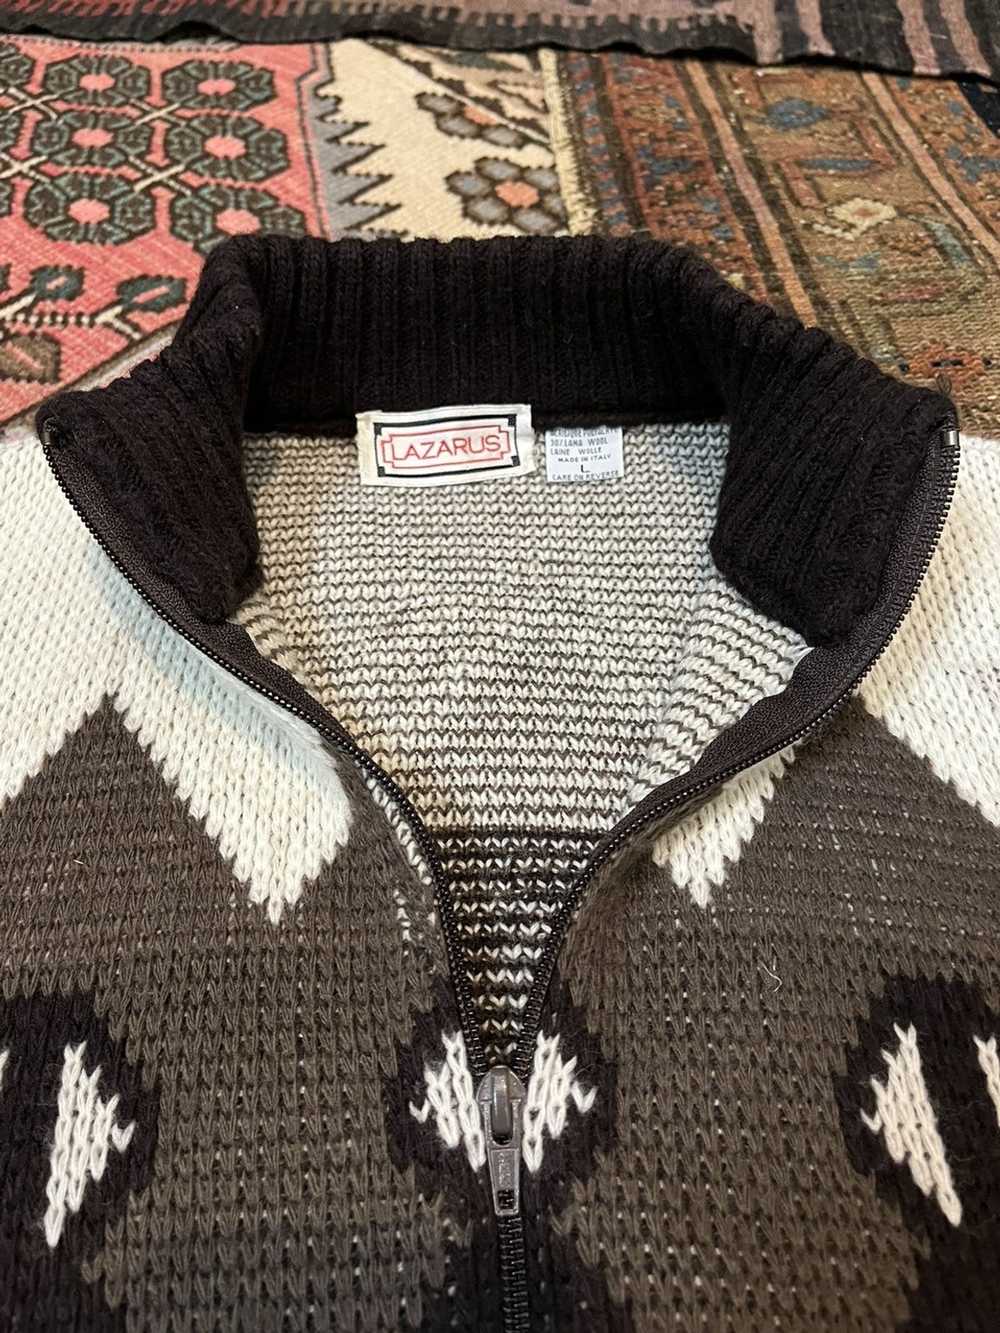 Vintage Vintage Lazarus sweater - image 5